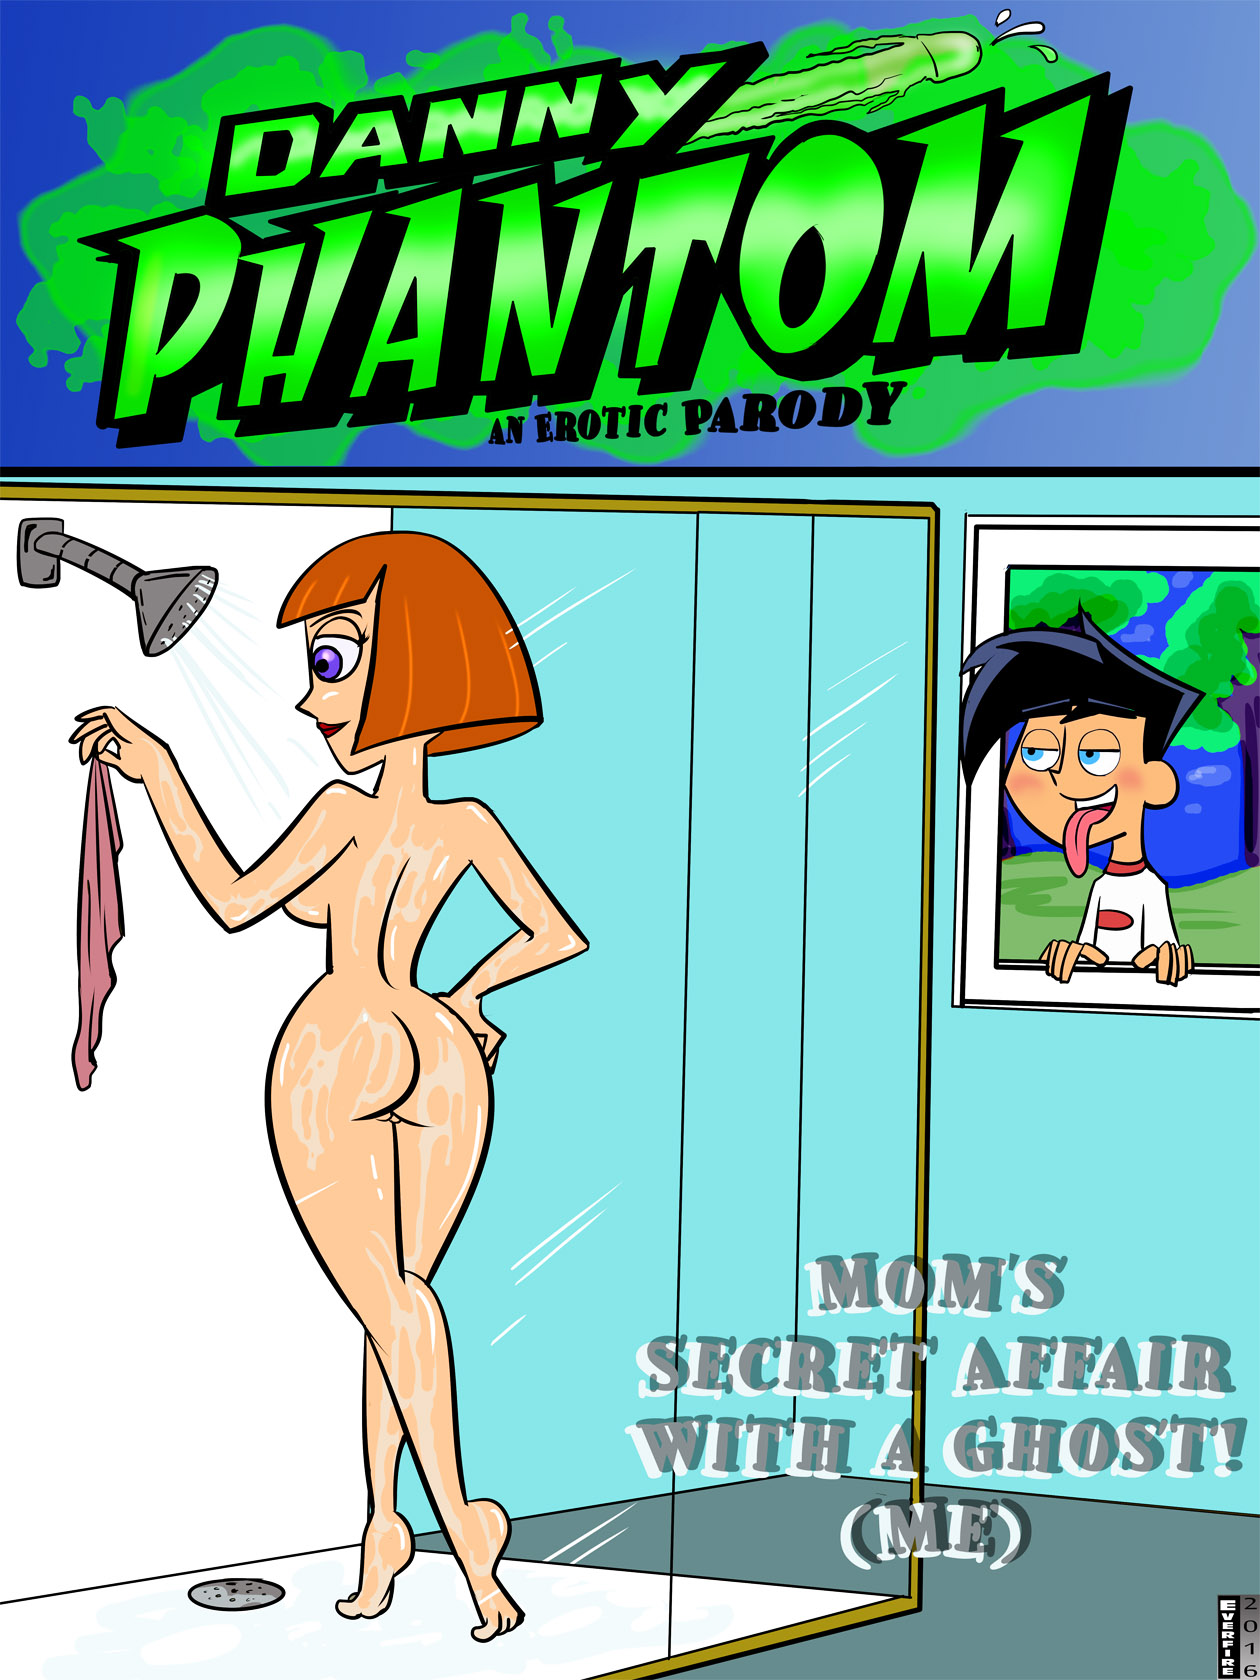 SureFap xxx porno Danny Phantom - [Everfire] - Danny Phantom #1 - Mom's Secret Affair With A Ghost! (Me)